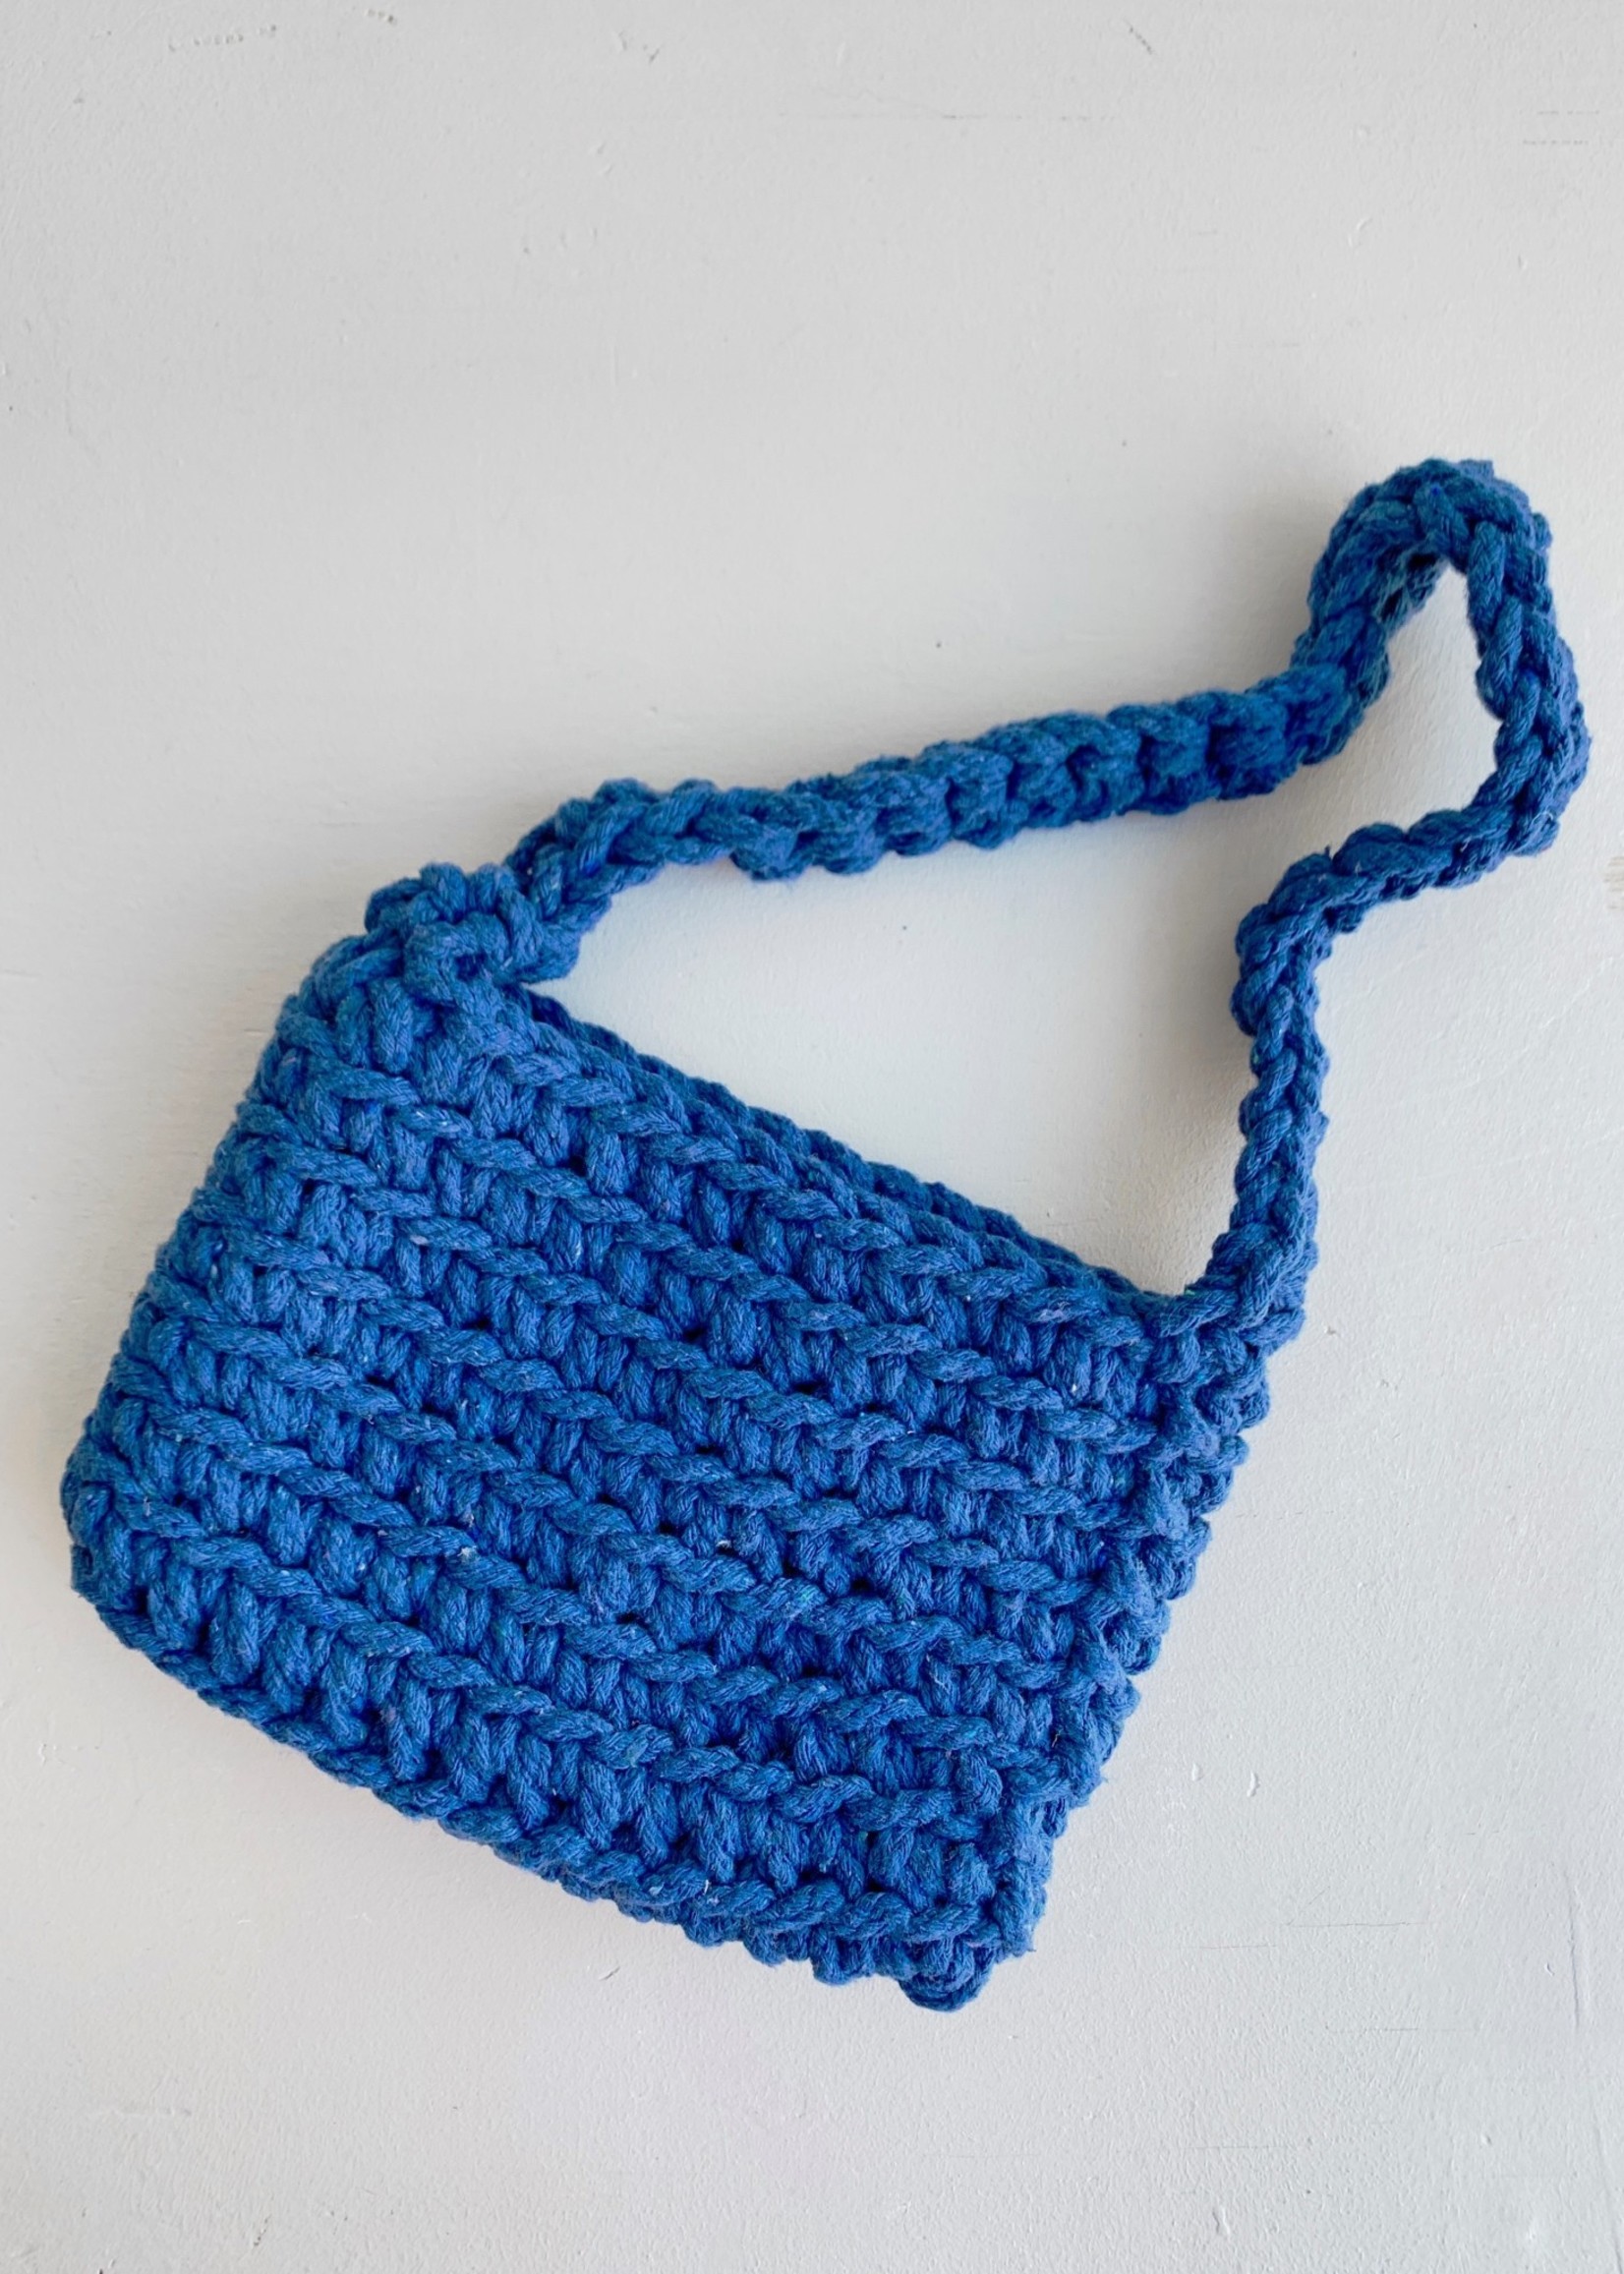 Annex Vintage Annex Vintage Crochet Bag